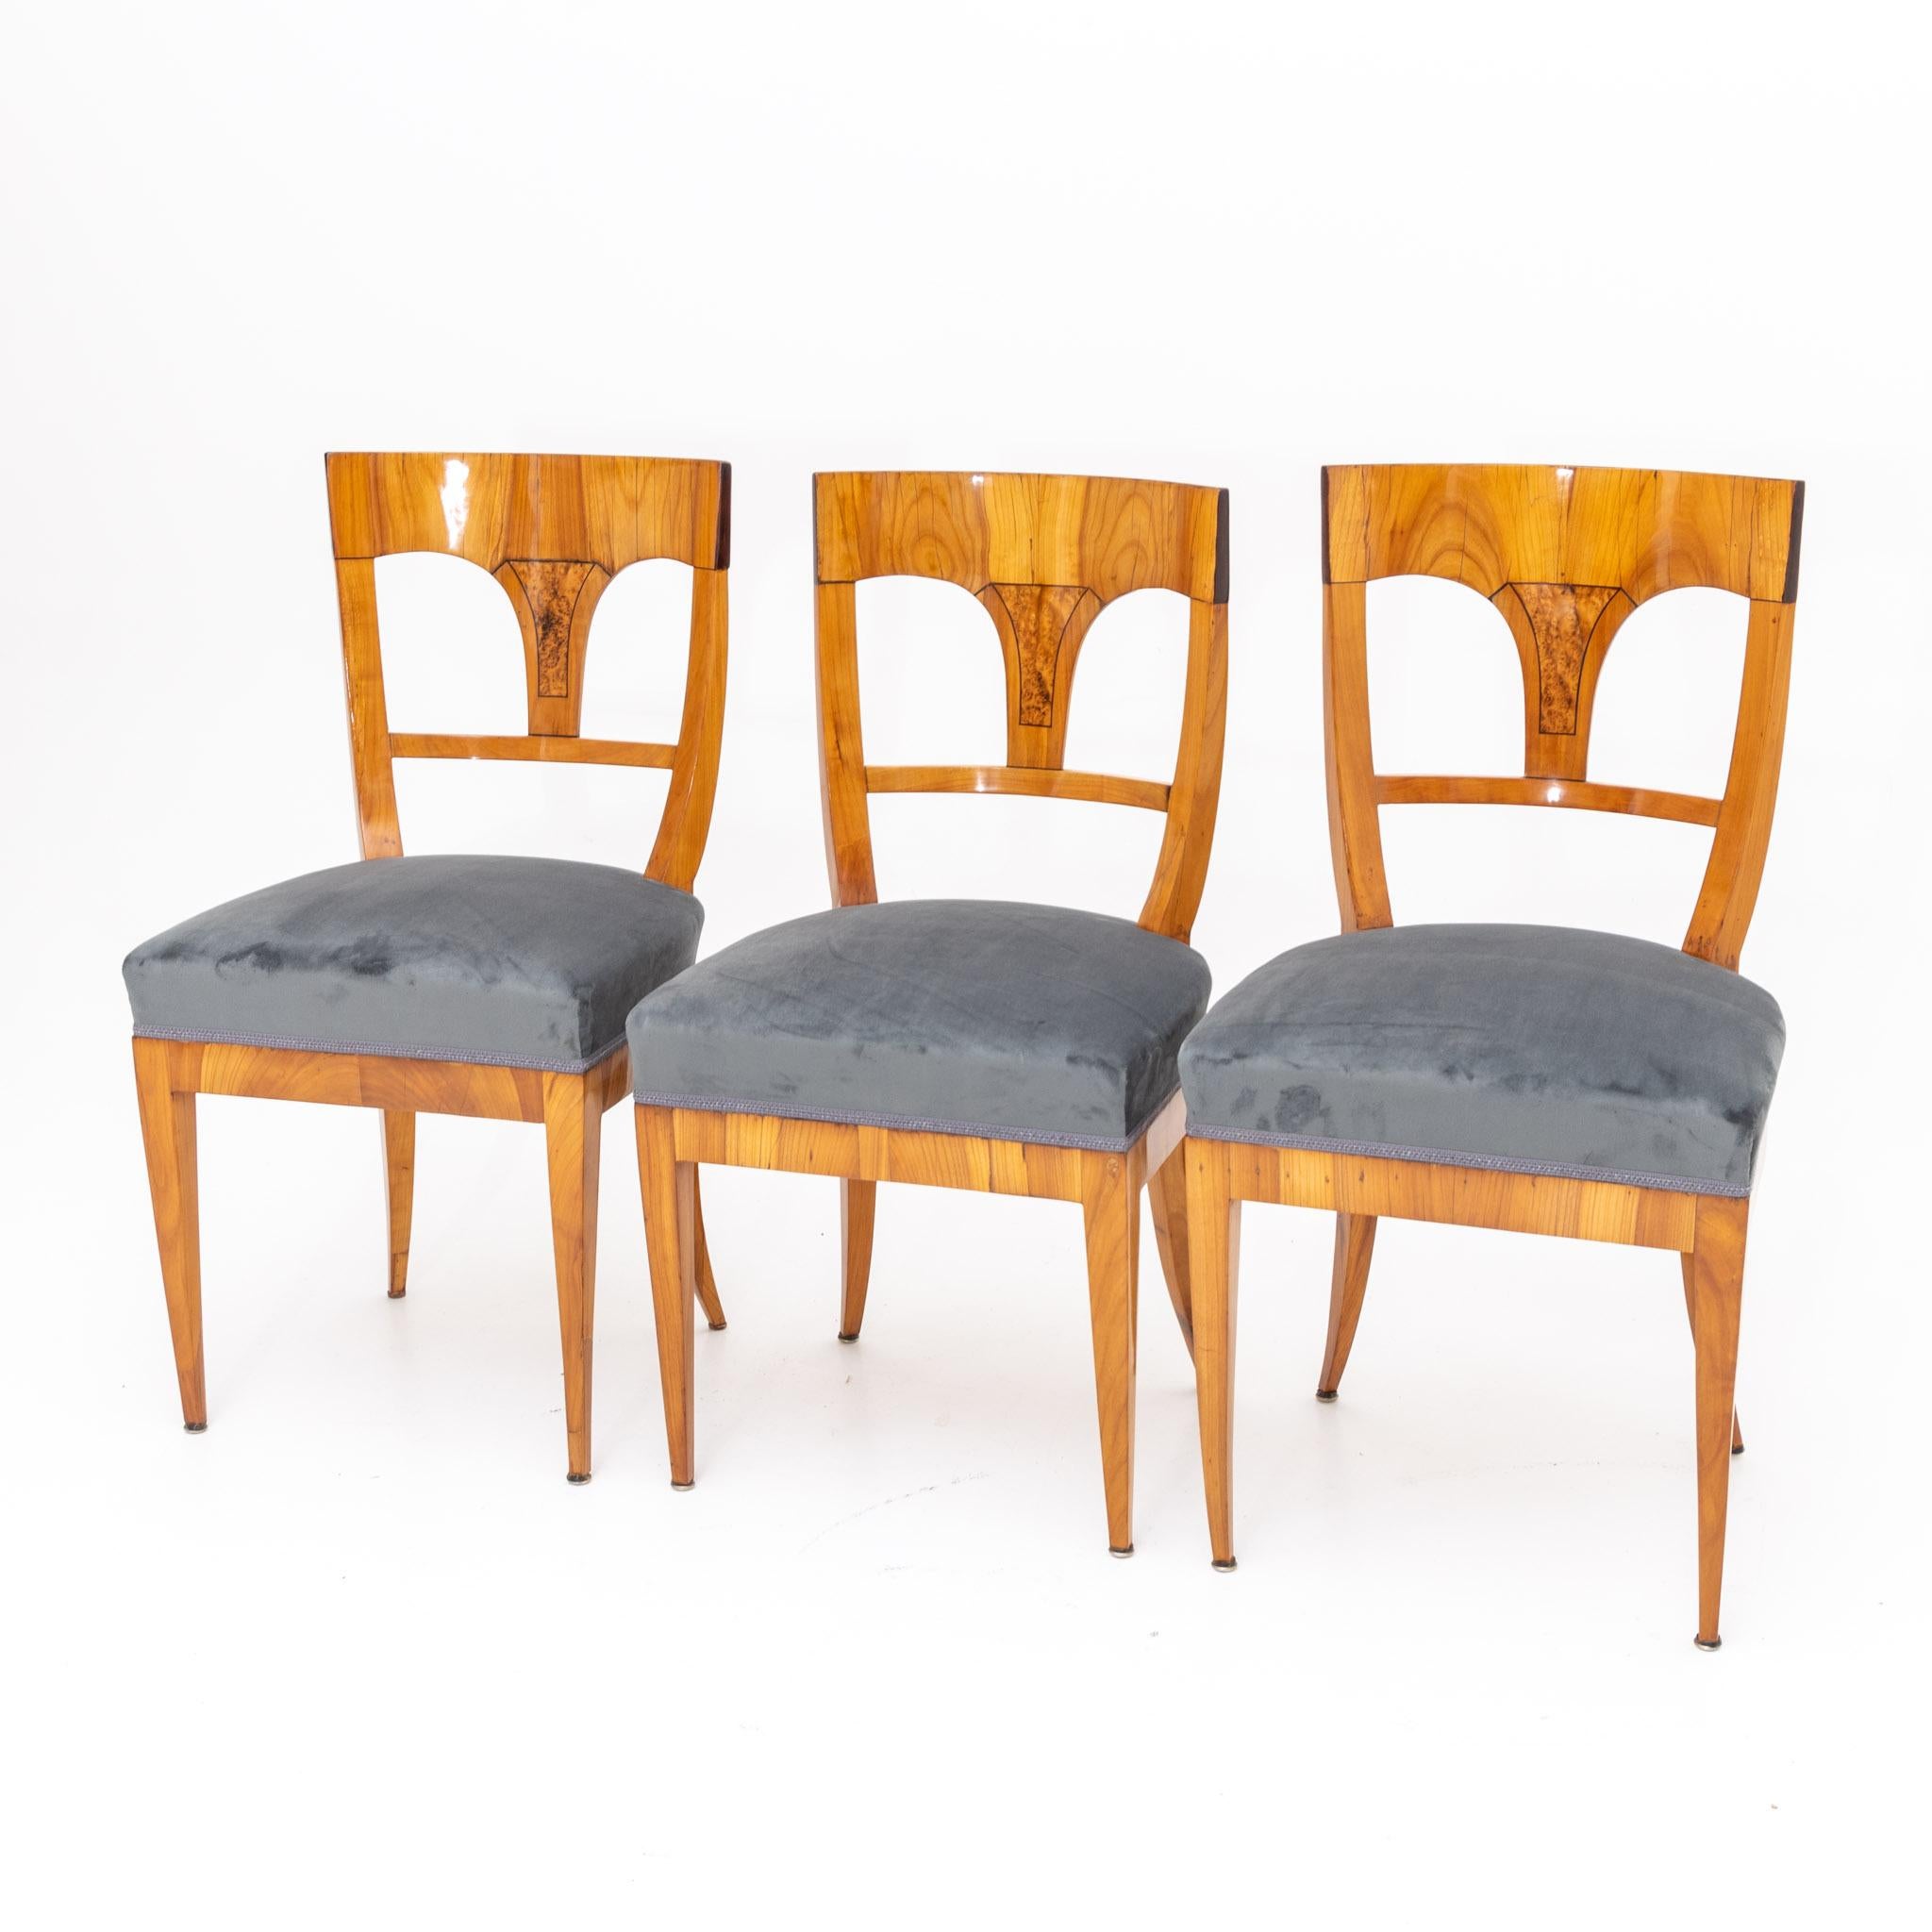 Early 19th Century Biedermeier Chairs, circa 1820